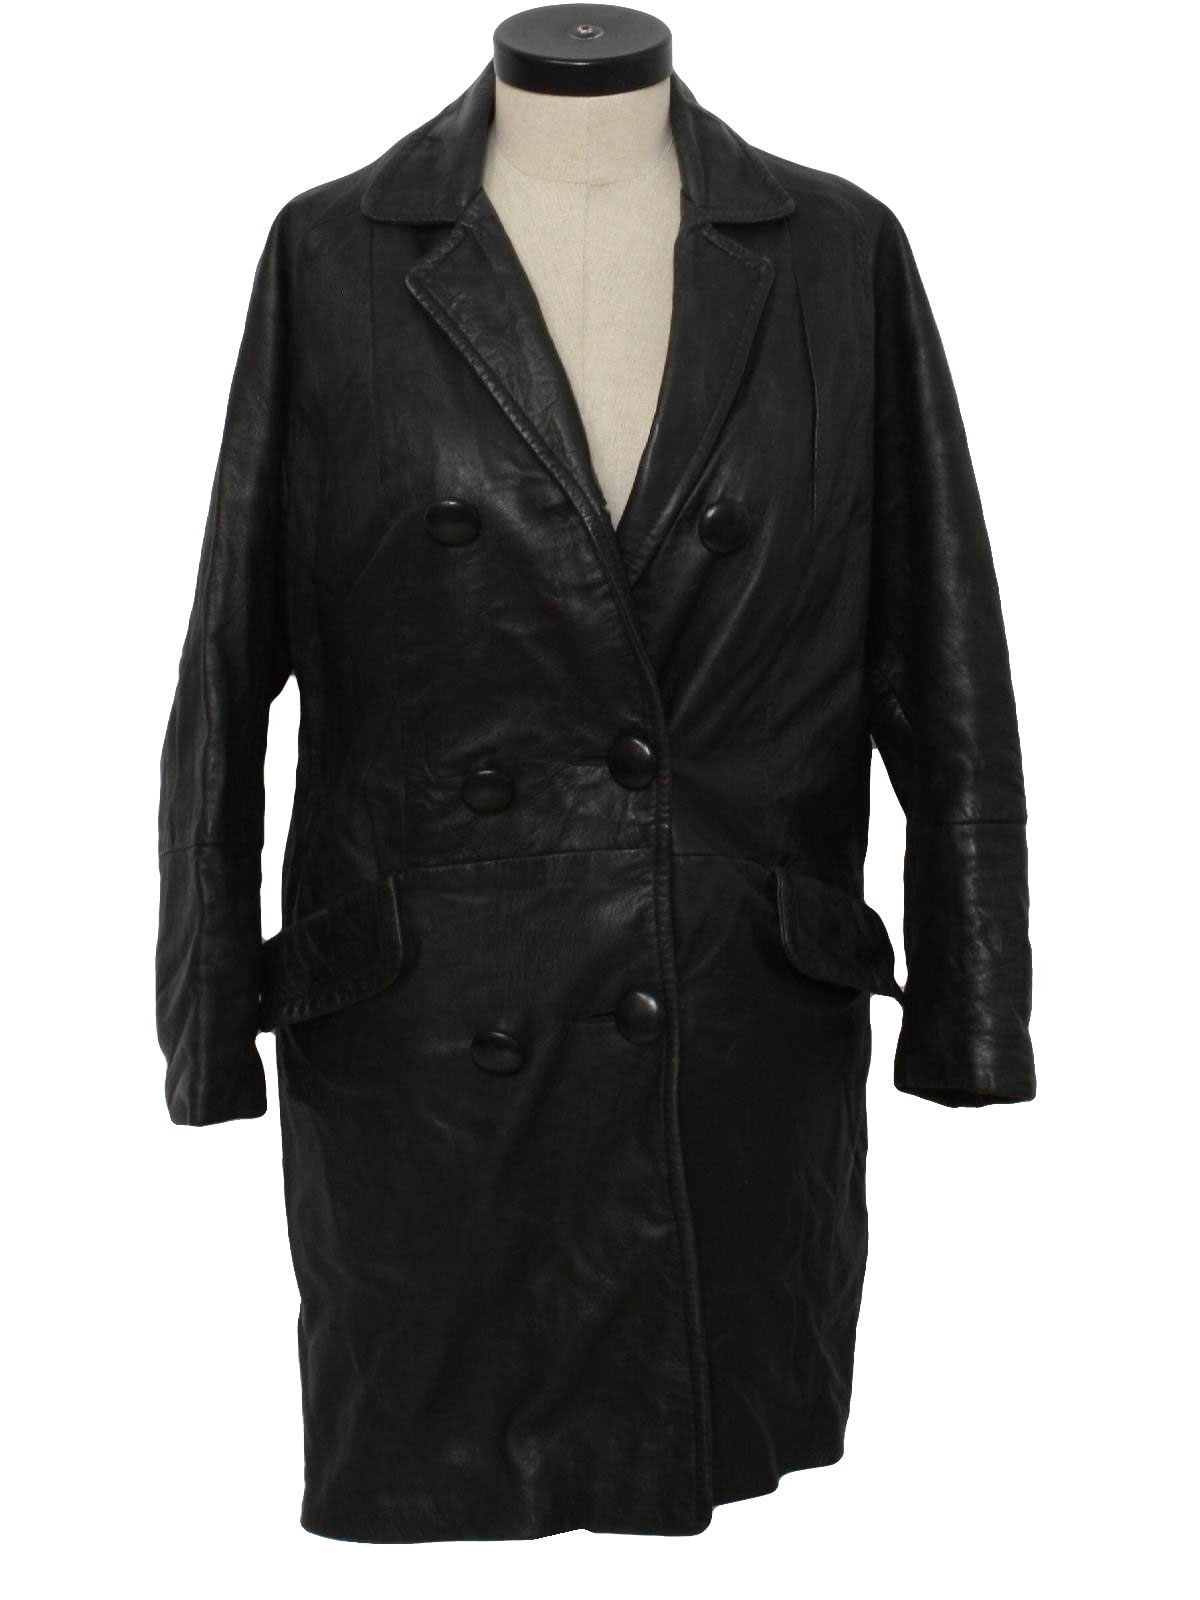 Retro 70s Leather Jacket (Cabretta Leather) : 70s -Cabretta Leather ...